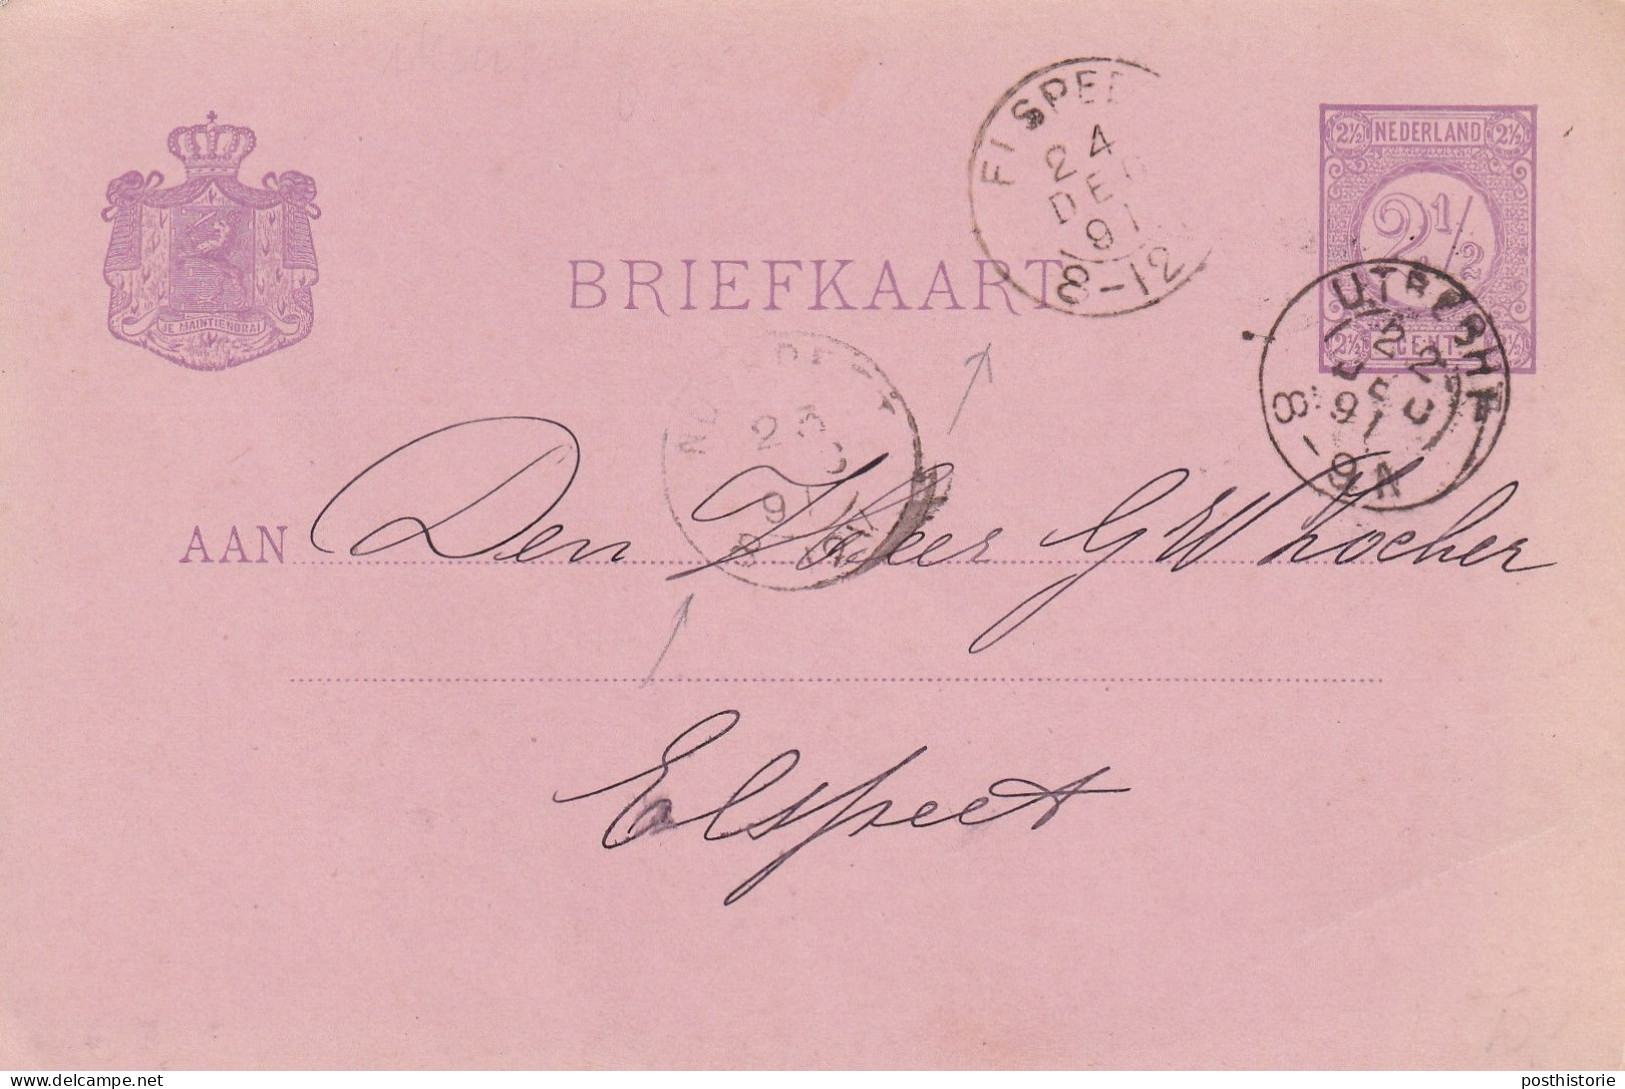 Briefkaart 22 Deec 1891 Utrecht Via Nunsoeet Enaar Elkspeetl (hulpkantor Kleinrond) - Postal History